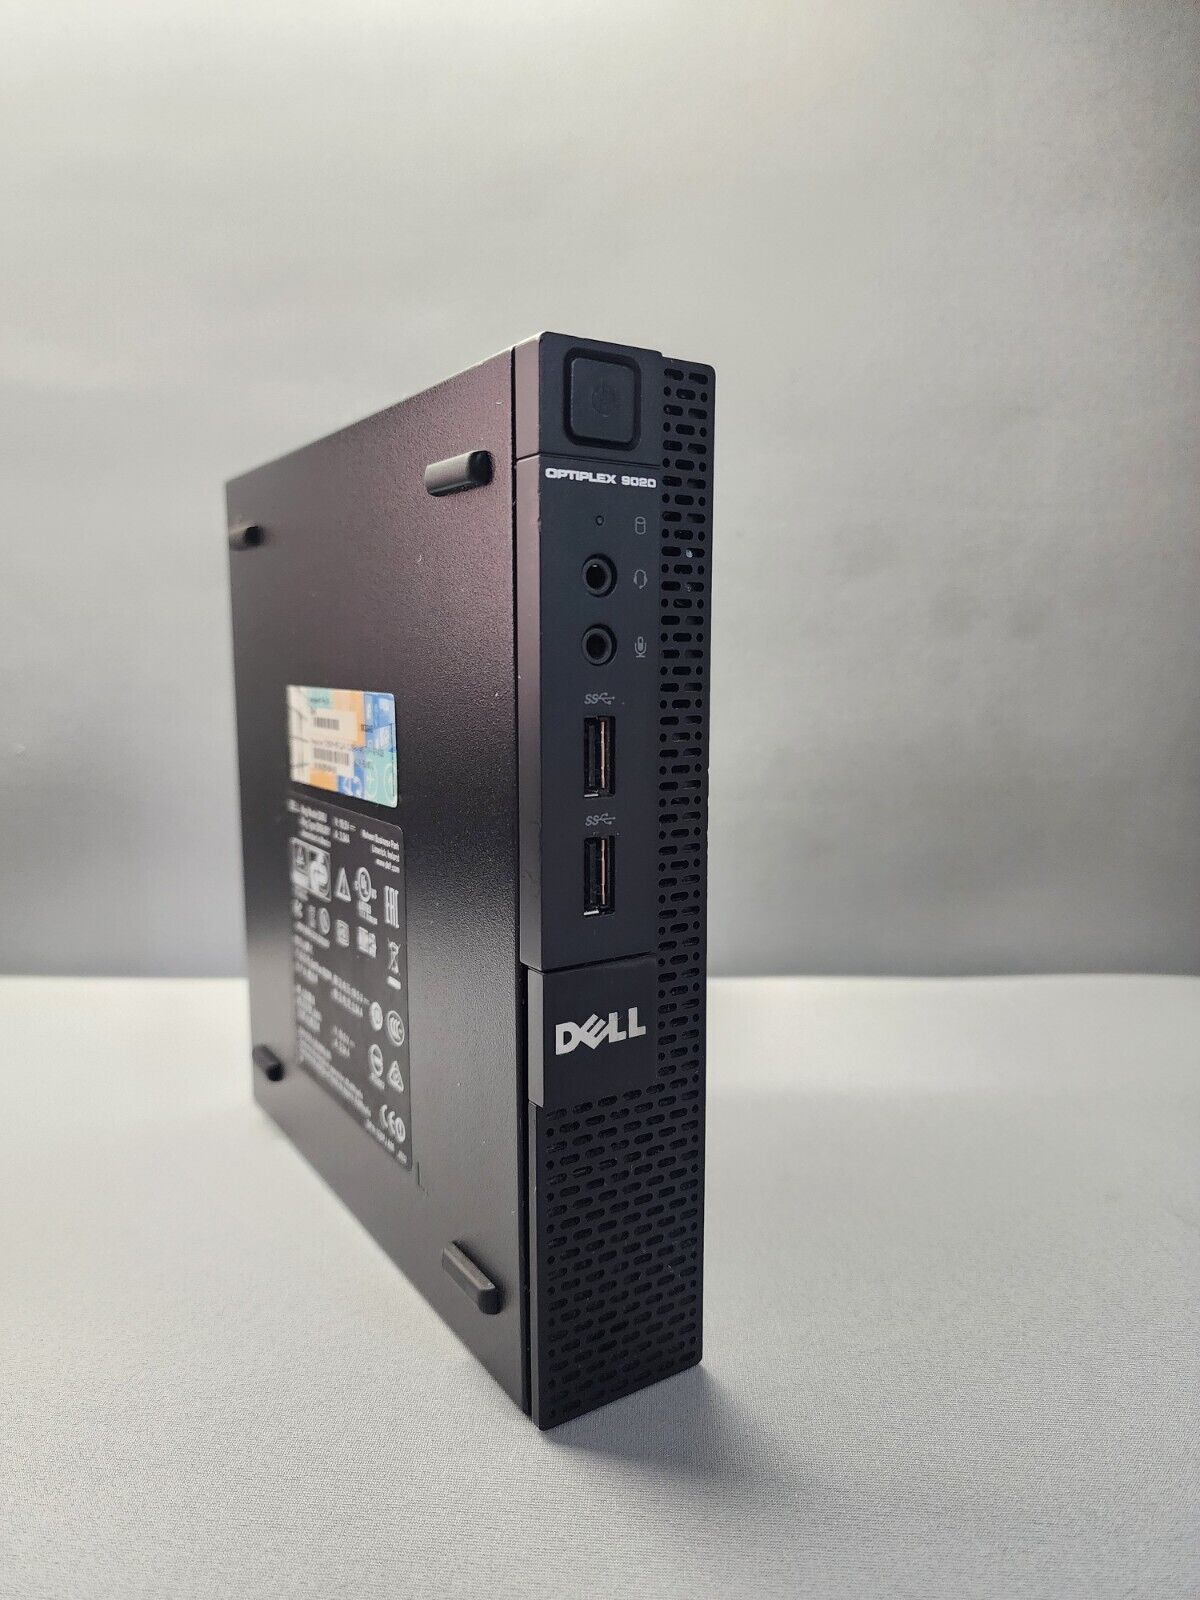 Dell Optiplex 9020M Intel i3-4150T 3.10GHz 4GB RAM 128 GB SSD windows 10 Pro